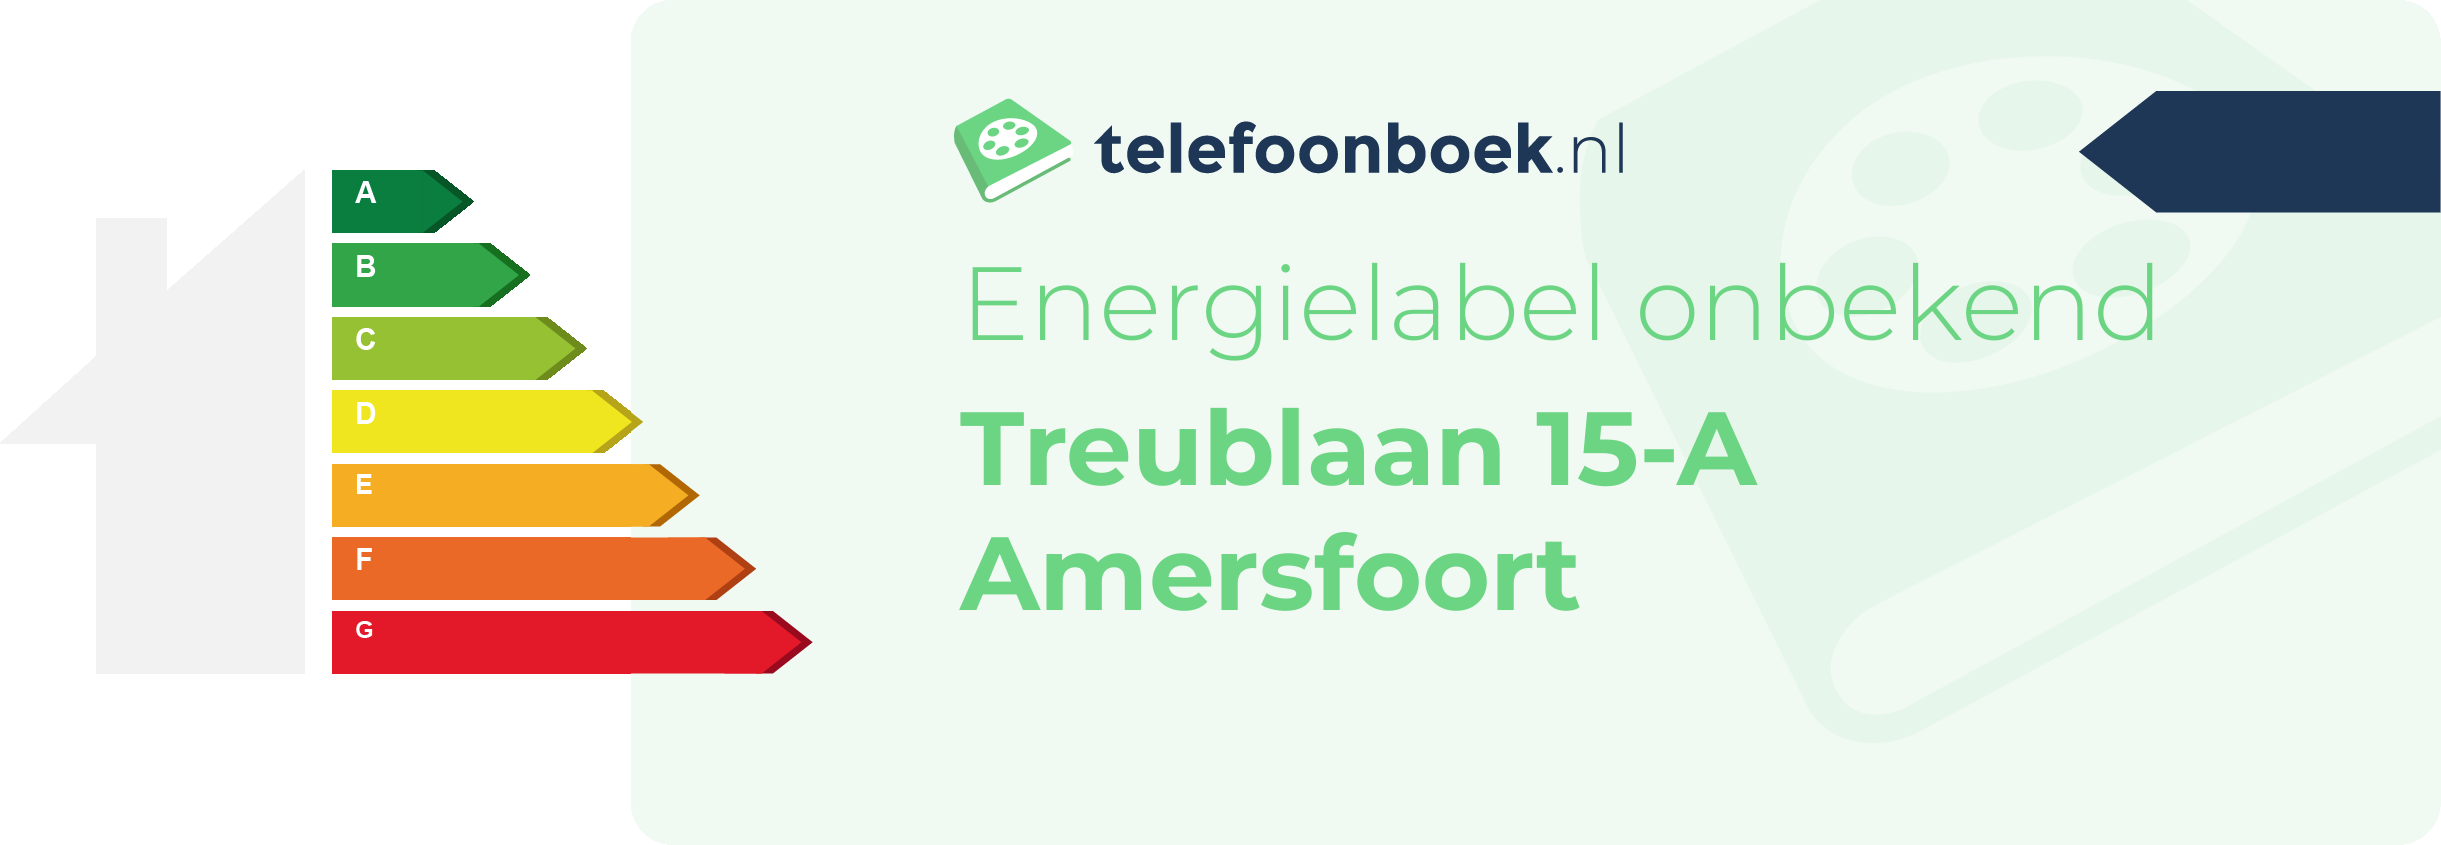 Energielabel Treublaan 15-A Amersfoort